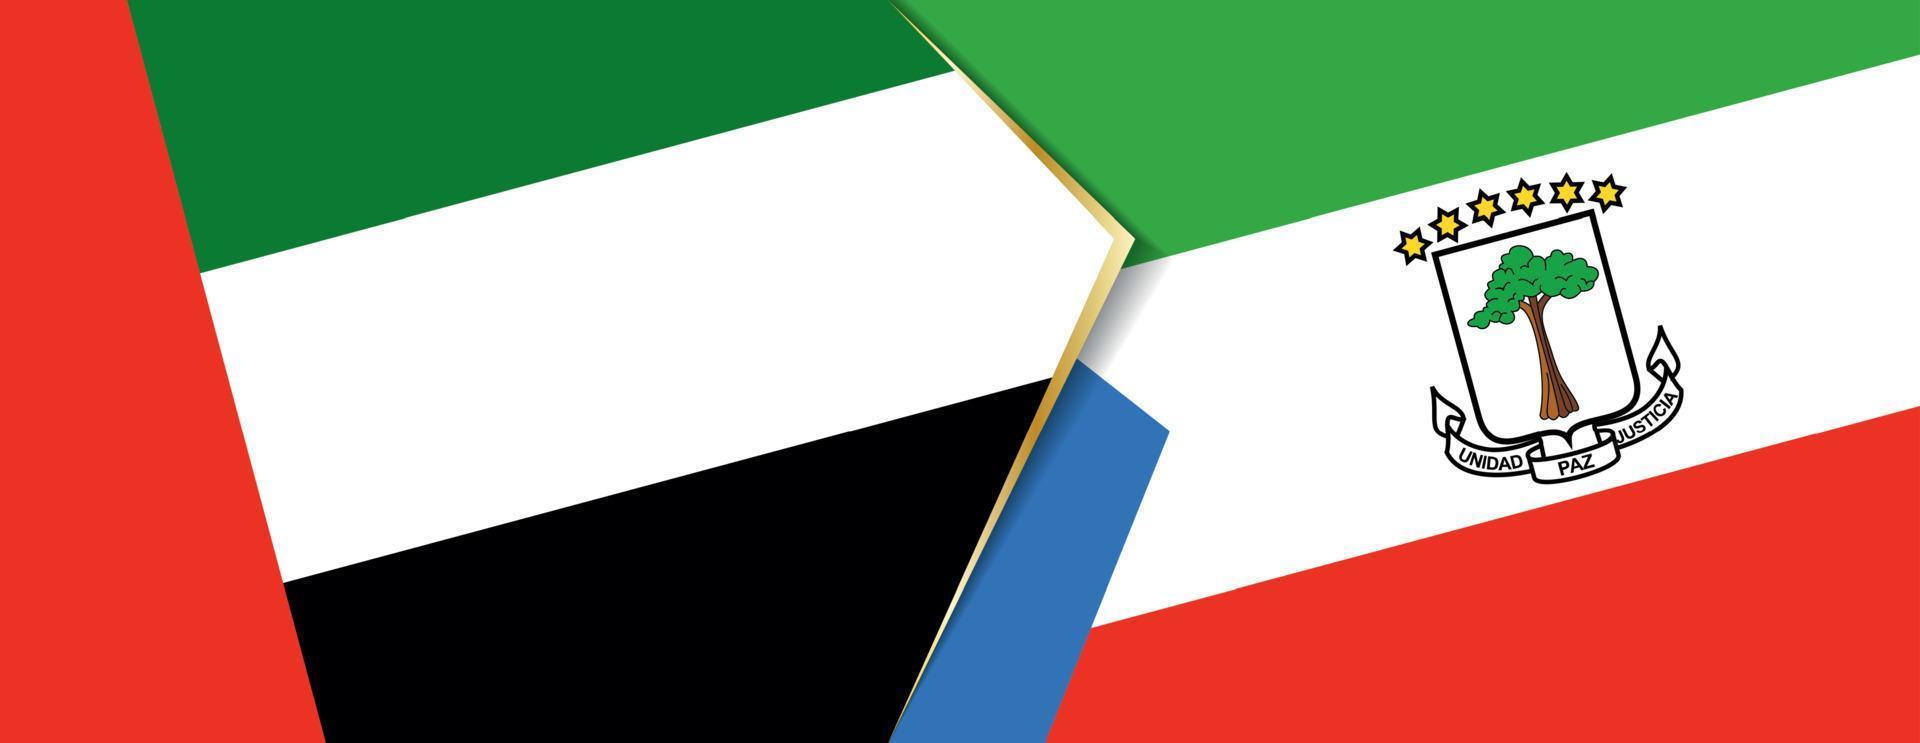 unido árabe emiratos y ecuatorial Guinea banderas, dos vector banderas